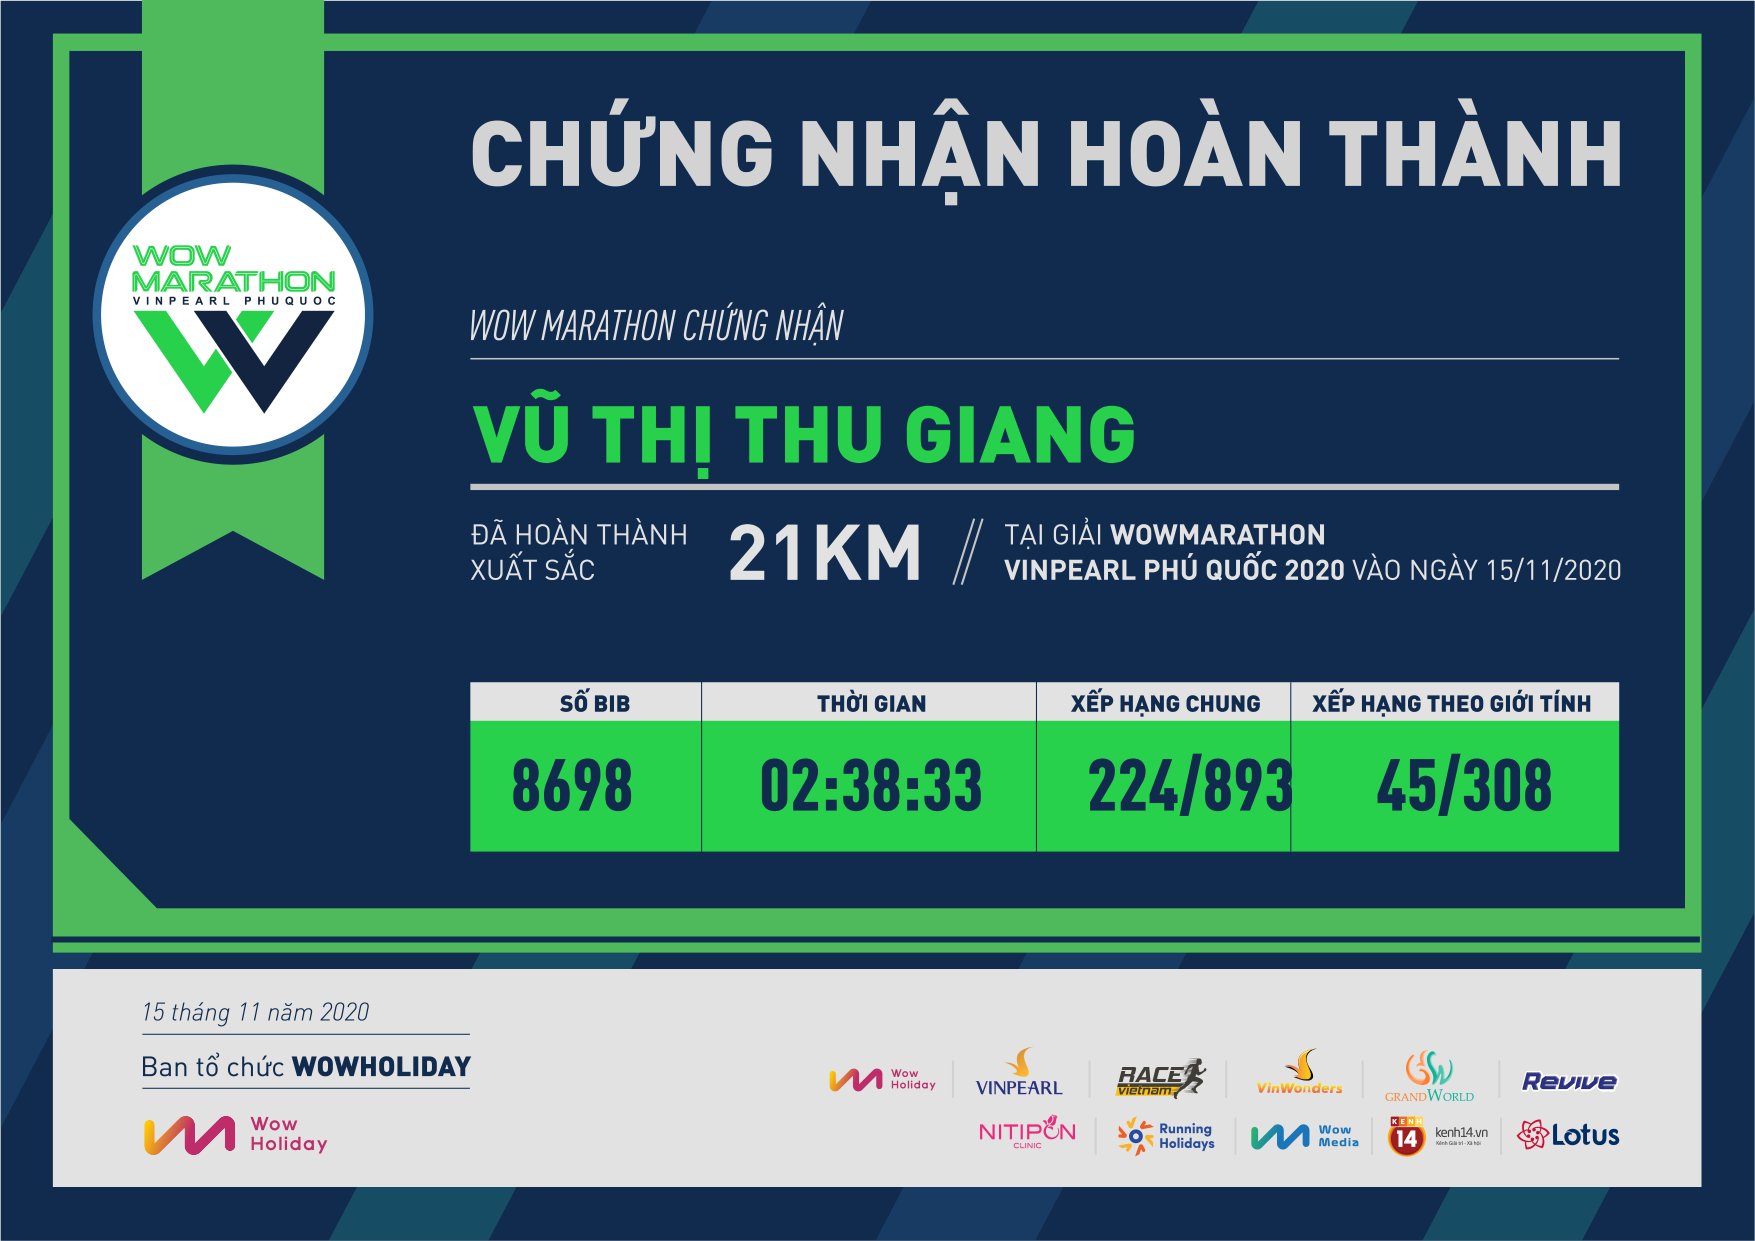 8698 - Vũ Thị Thu Giang